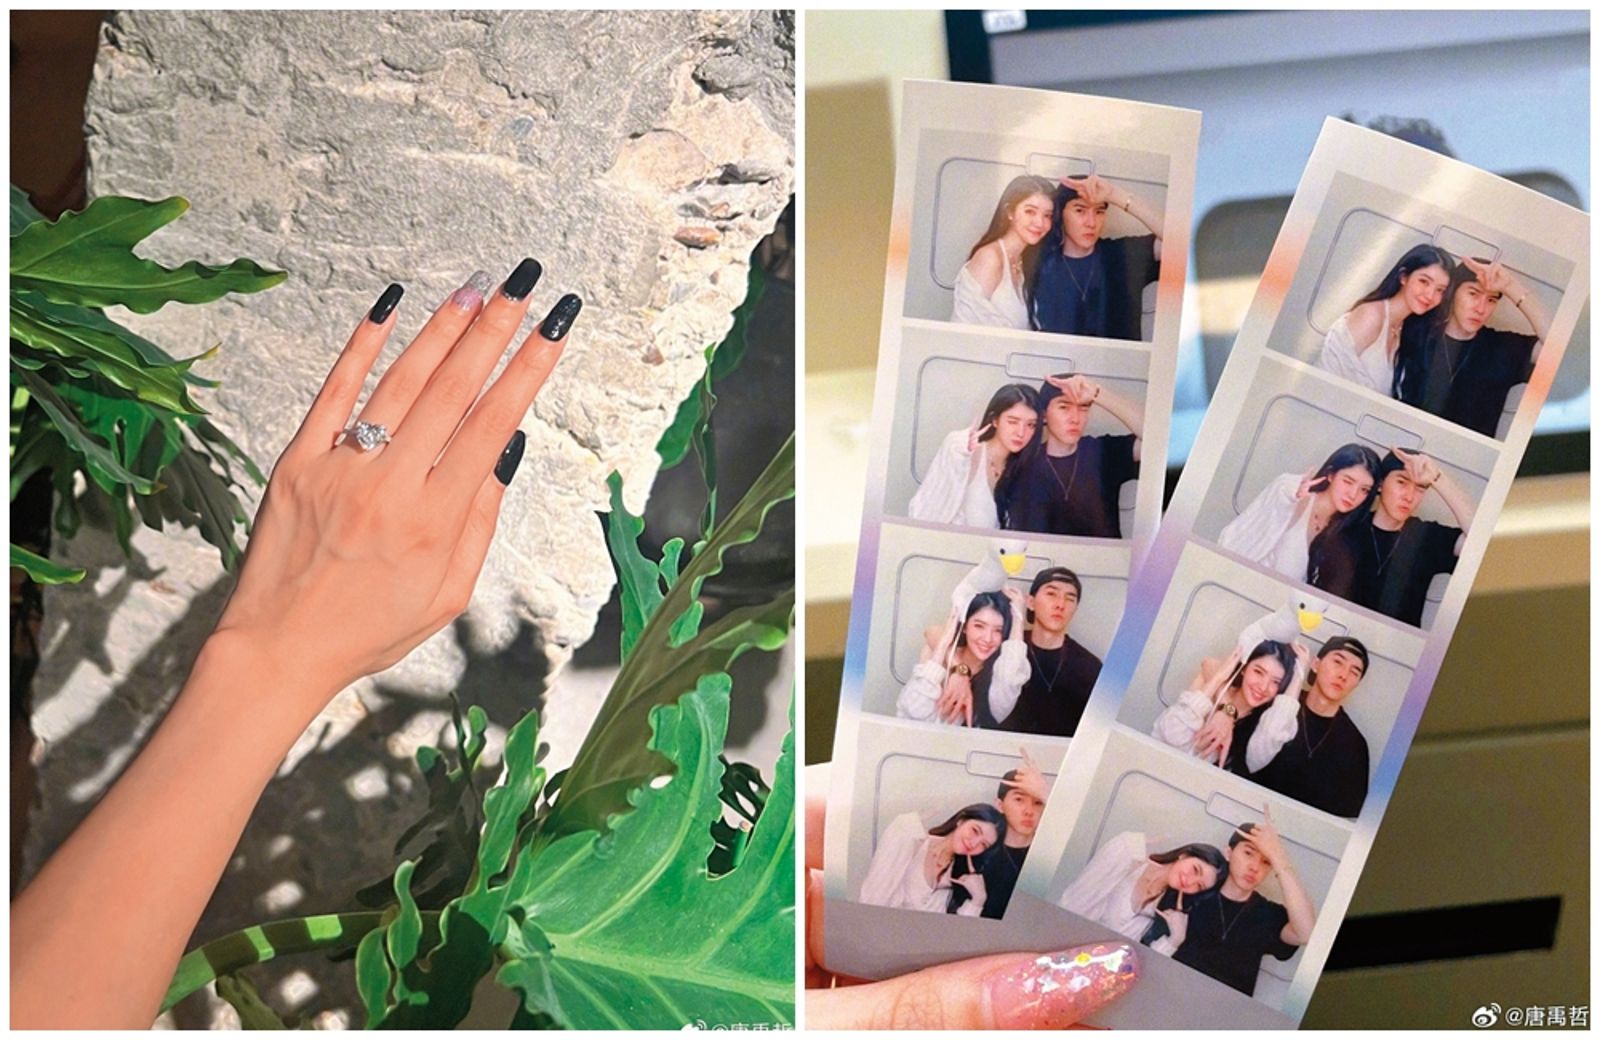 上個月10日，唐禹哲在微博放閃，正式介紹「我的女孩」蘇小軒，搭配女友手上戴著愛心形鑽戒的照片，獲得大批網友祝福。（翻攝自唐禹哲微博）